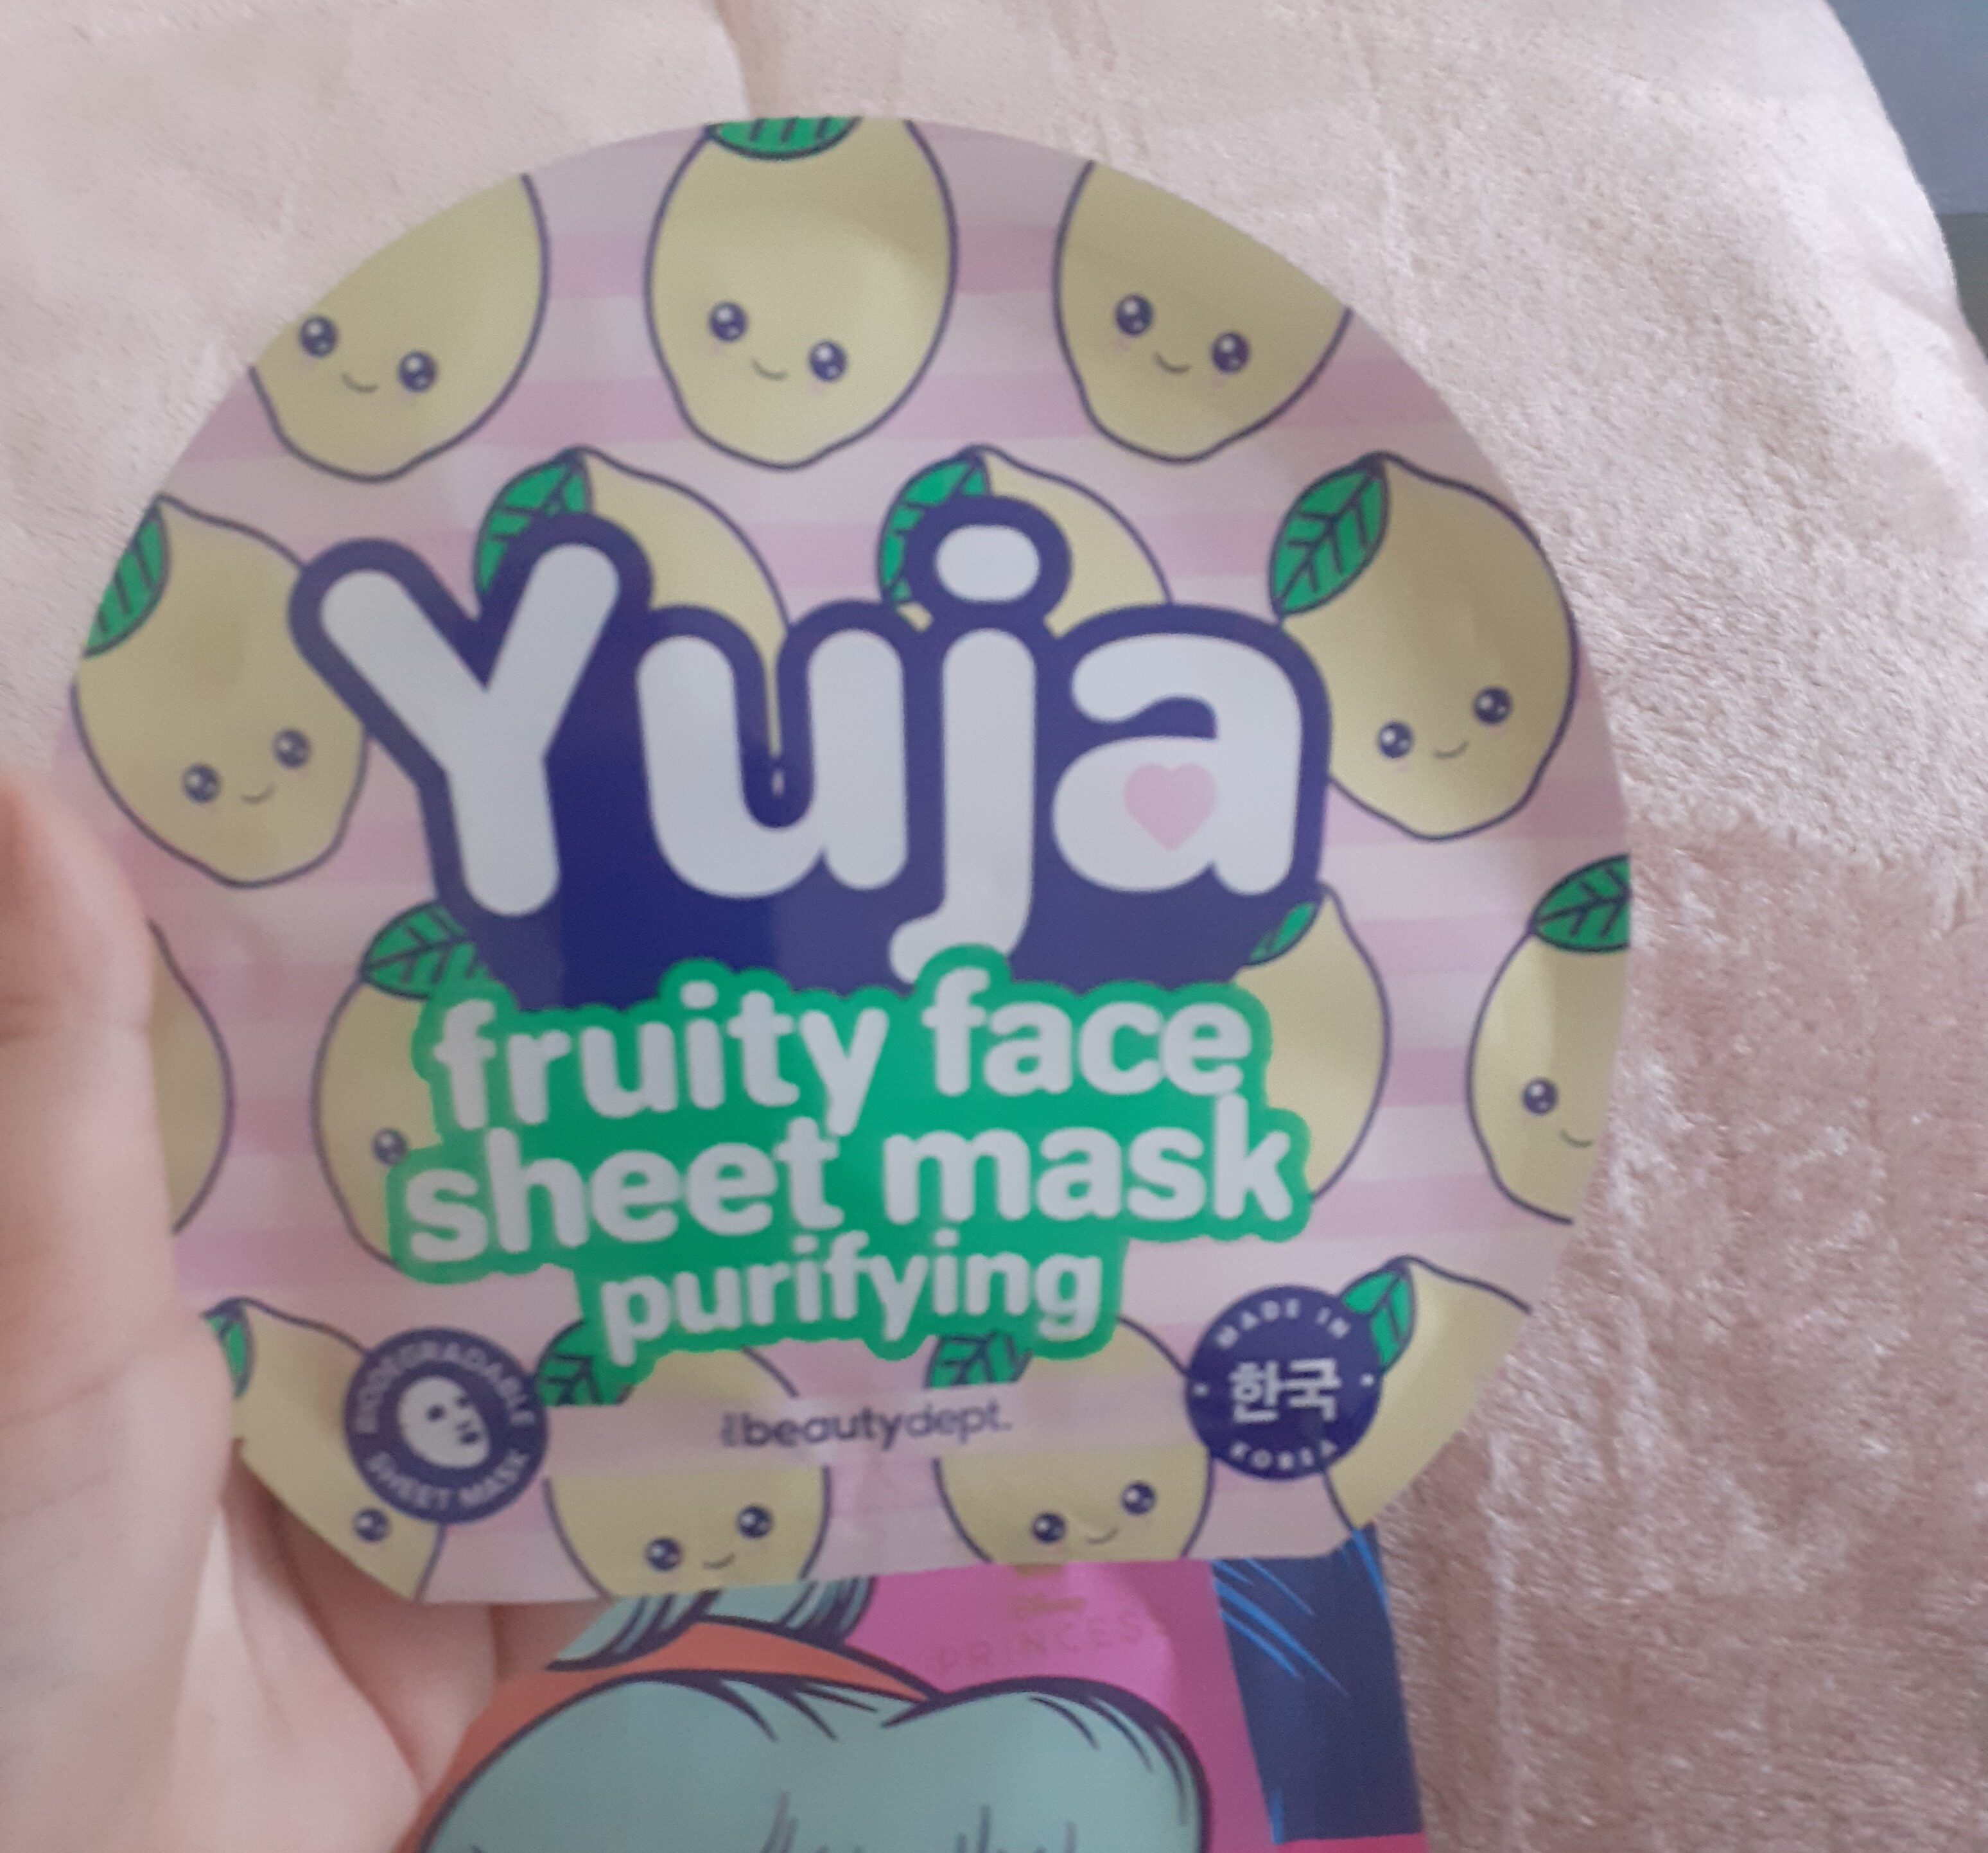 masque au Yuja - Product - fr